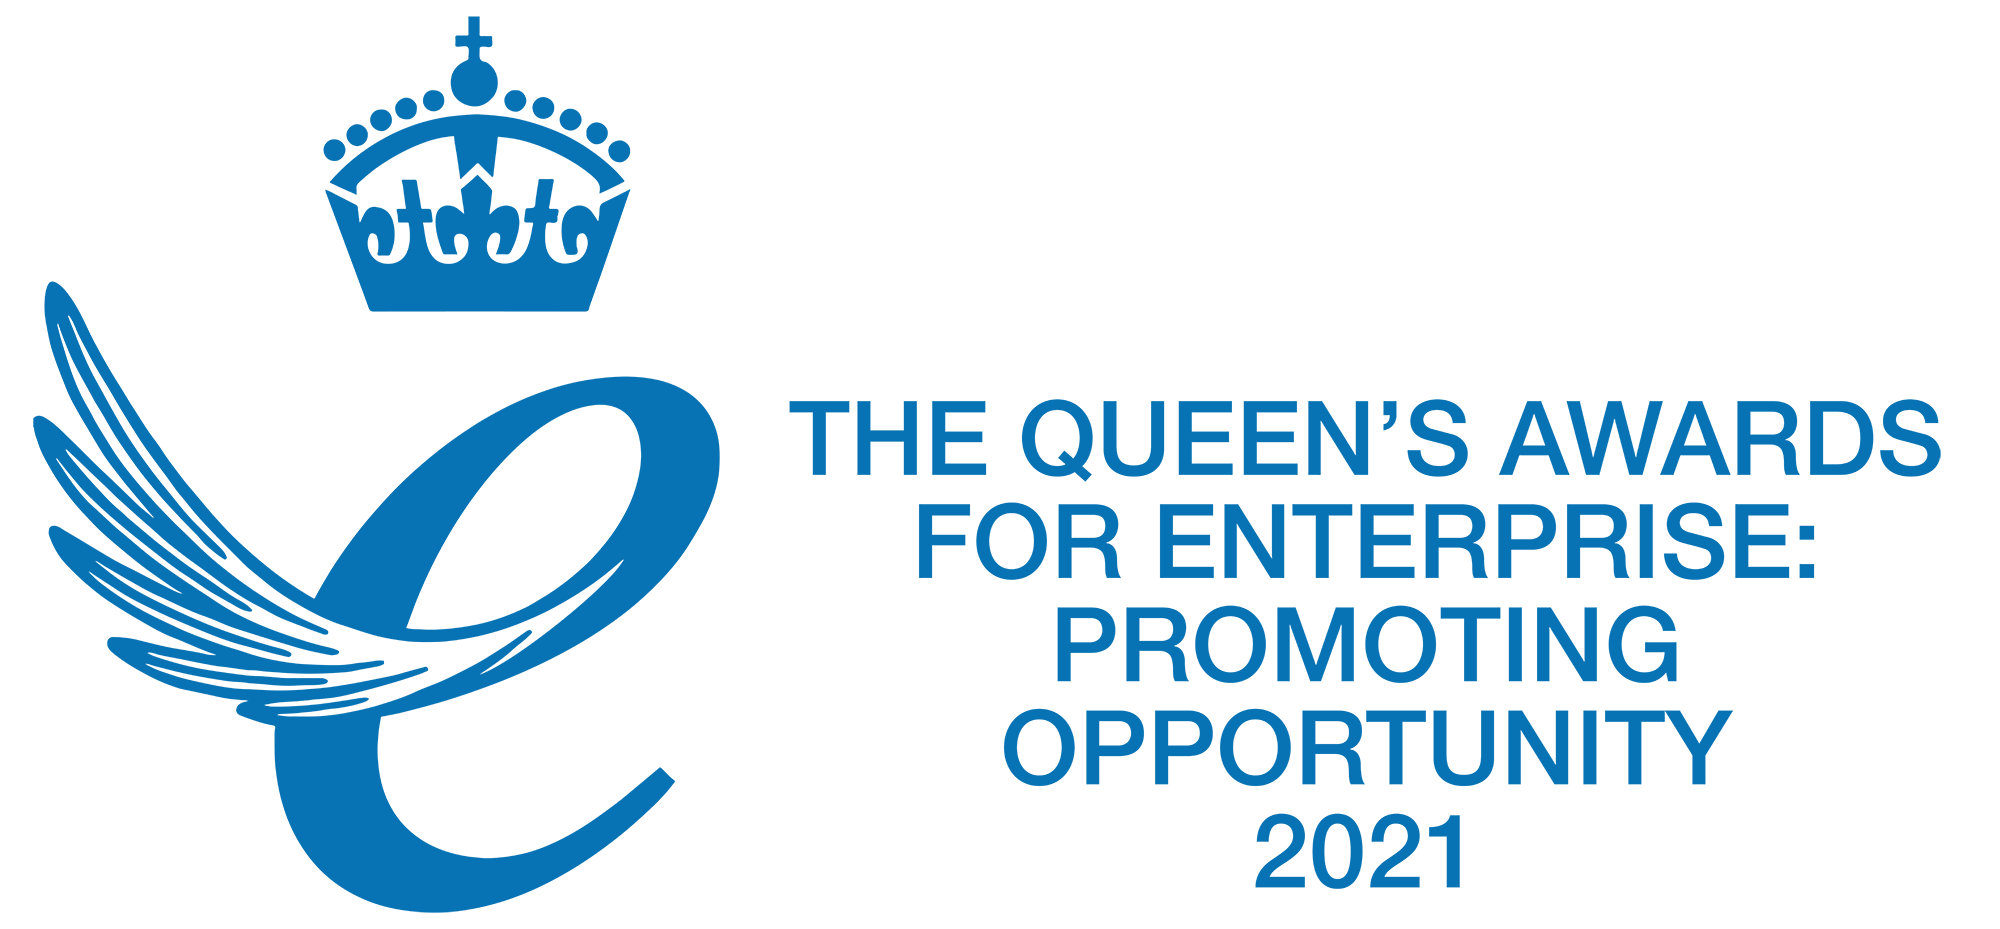 Queens Award Logo